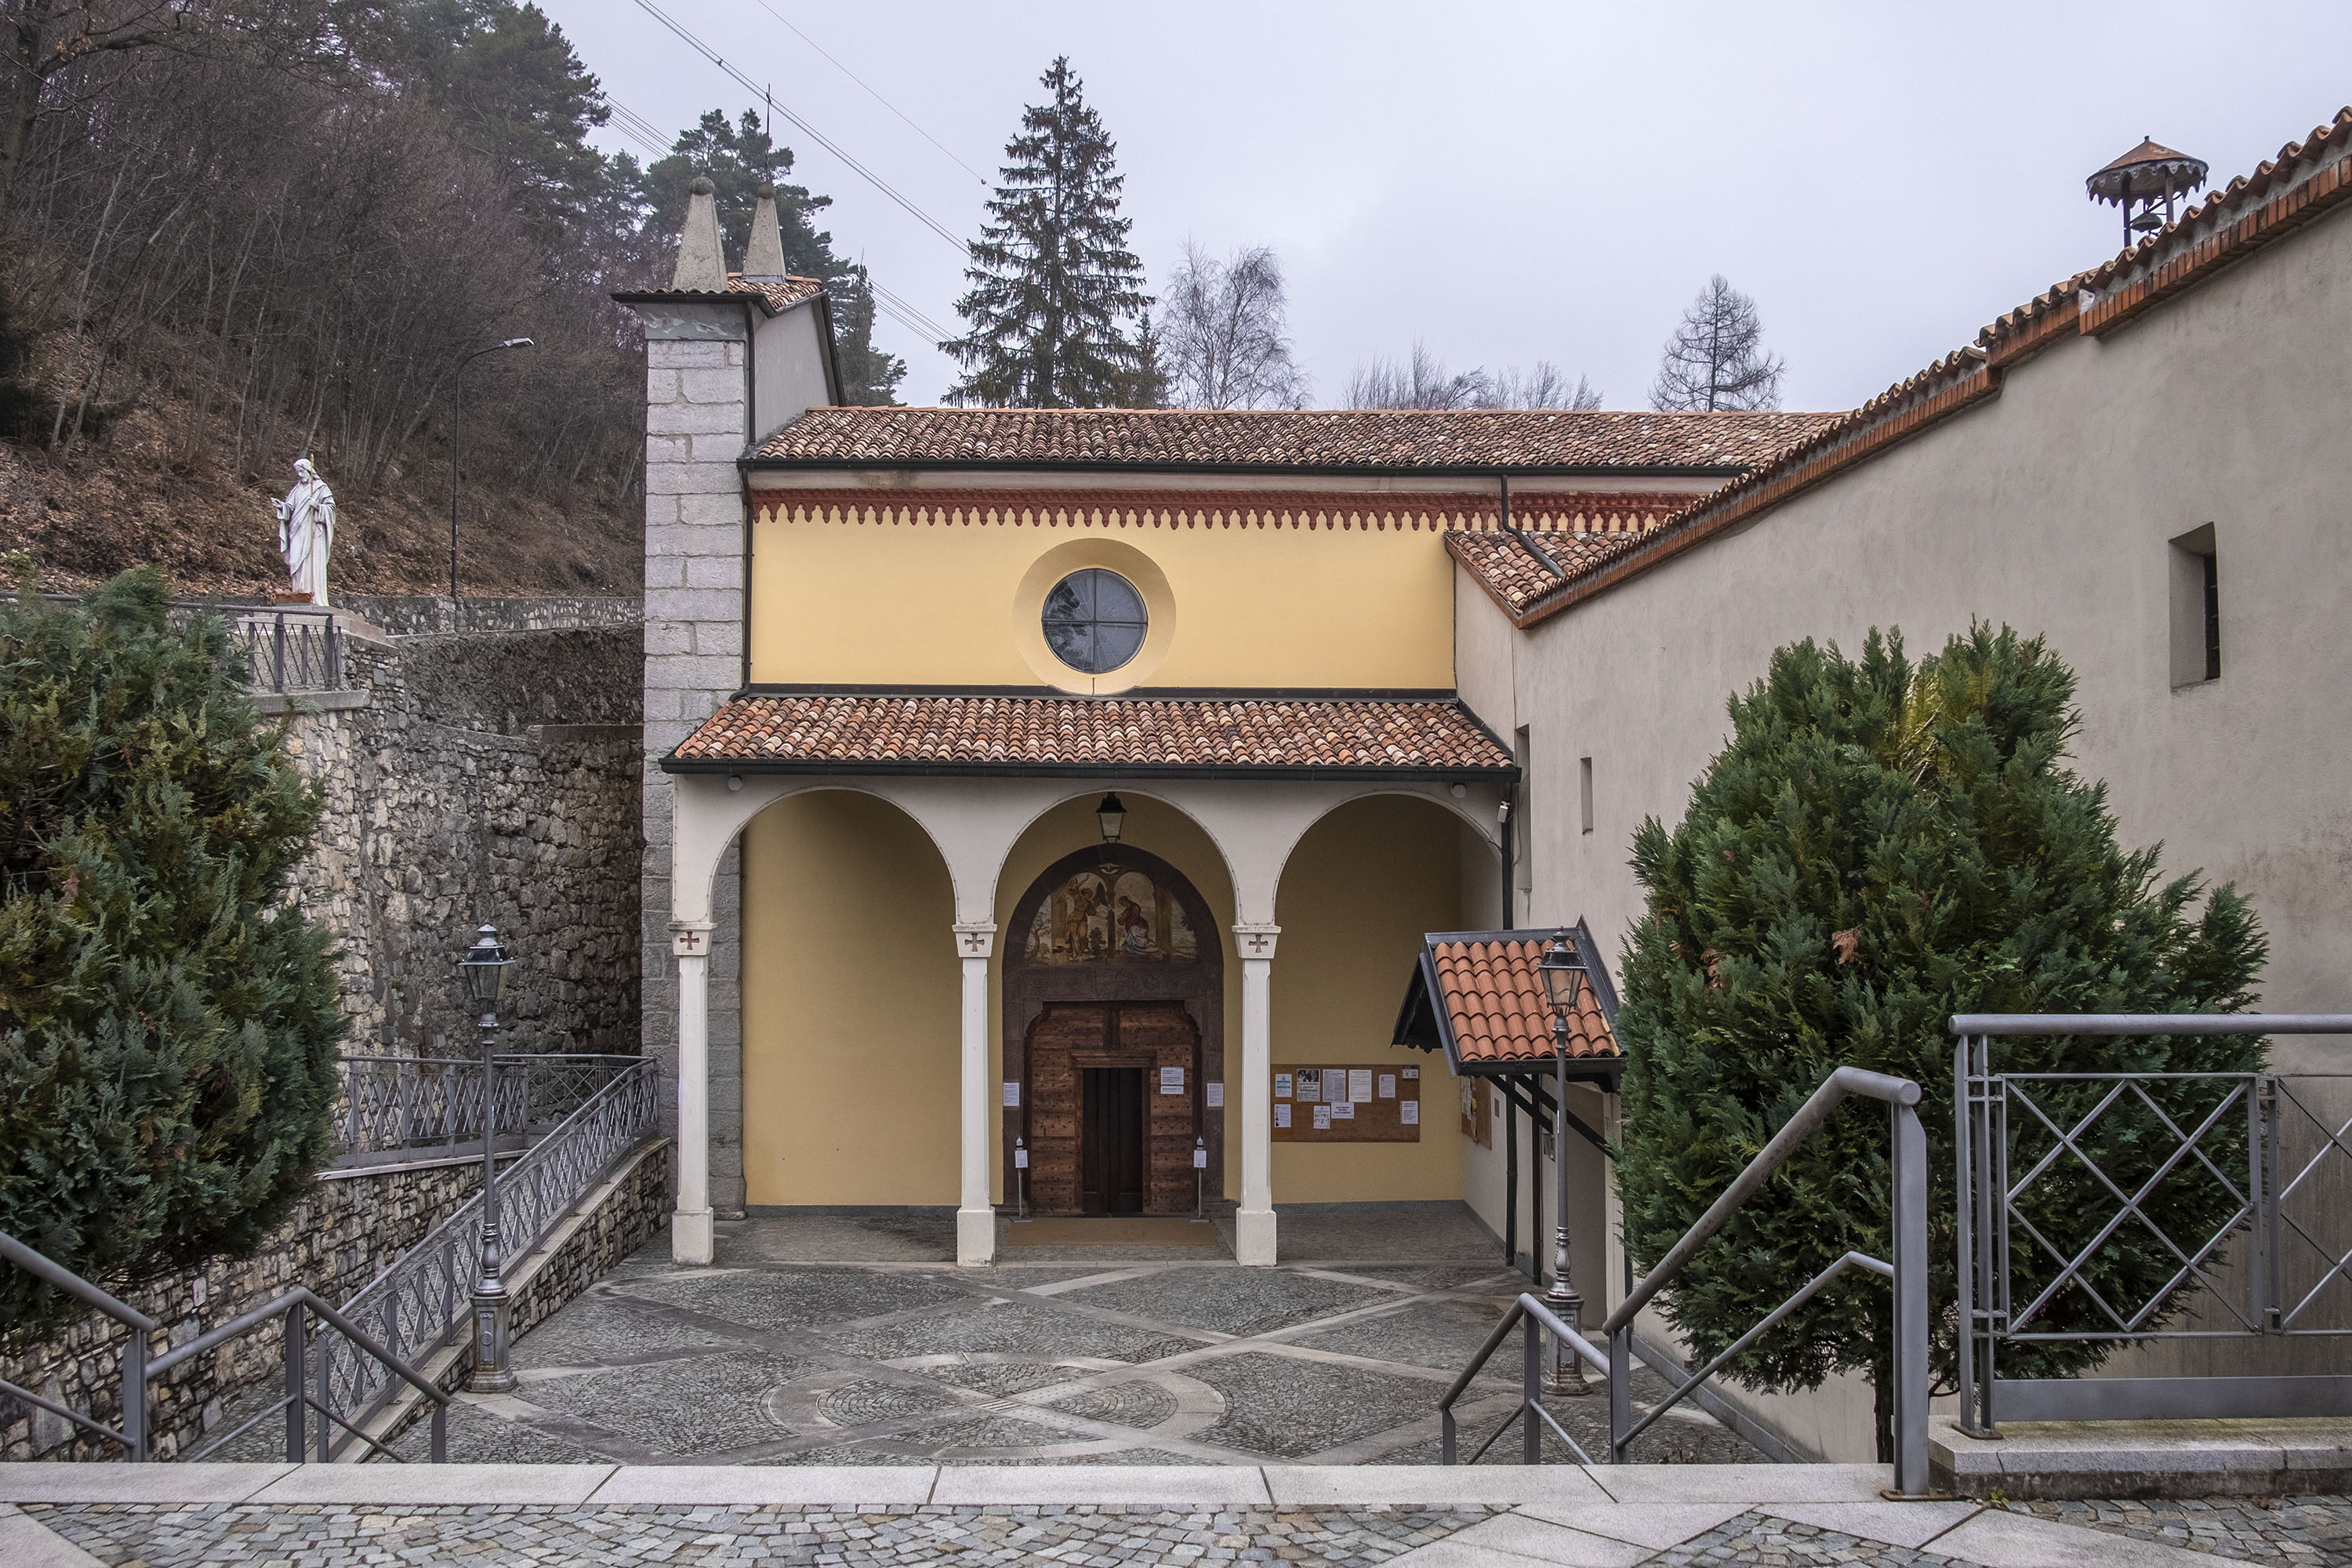 Porticato con archi e ingresso al Santuario 